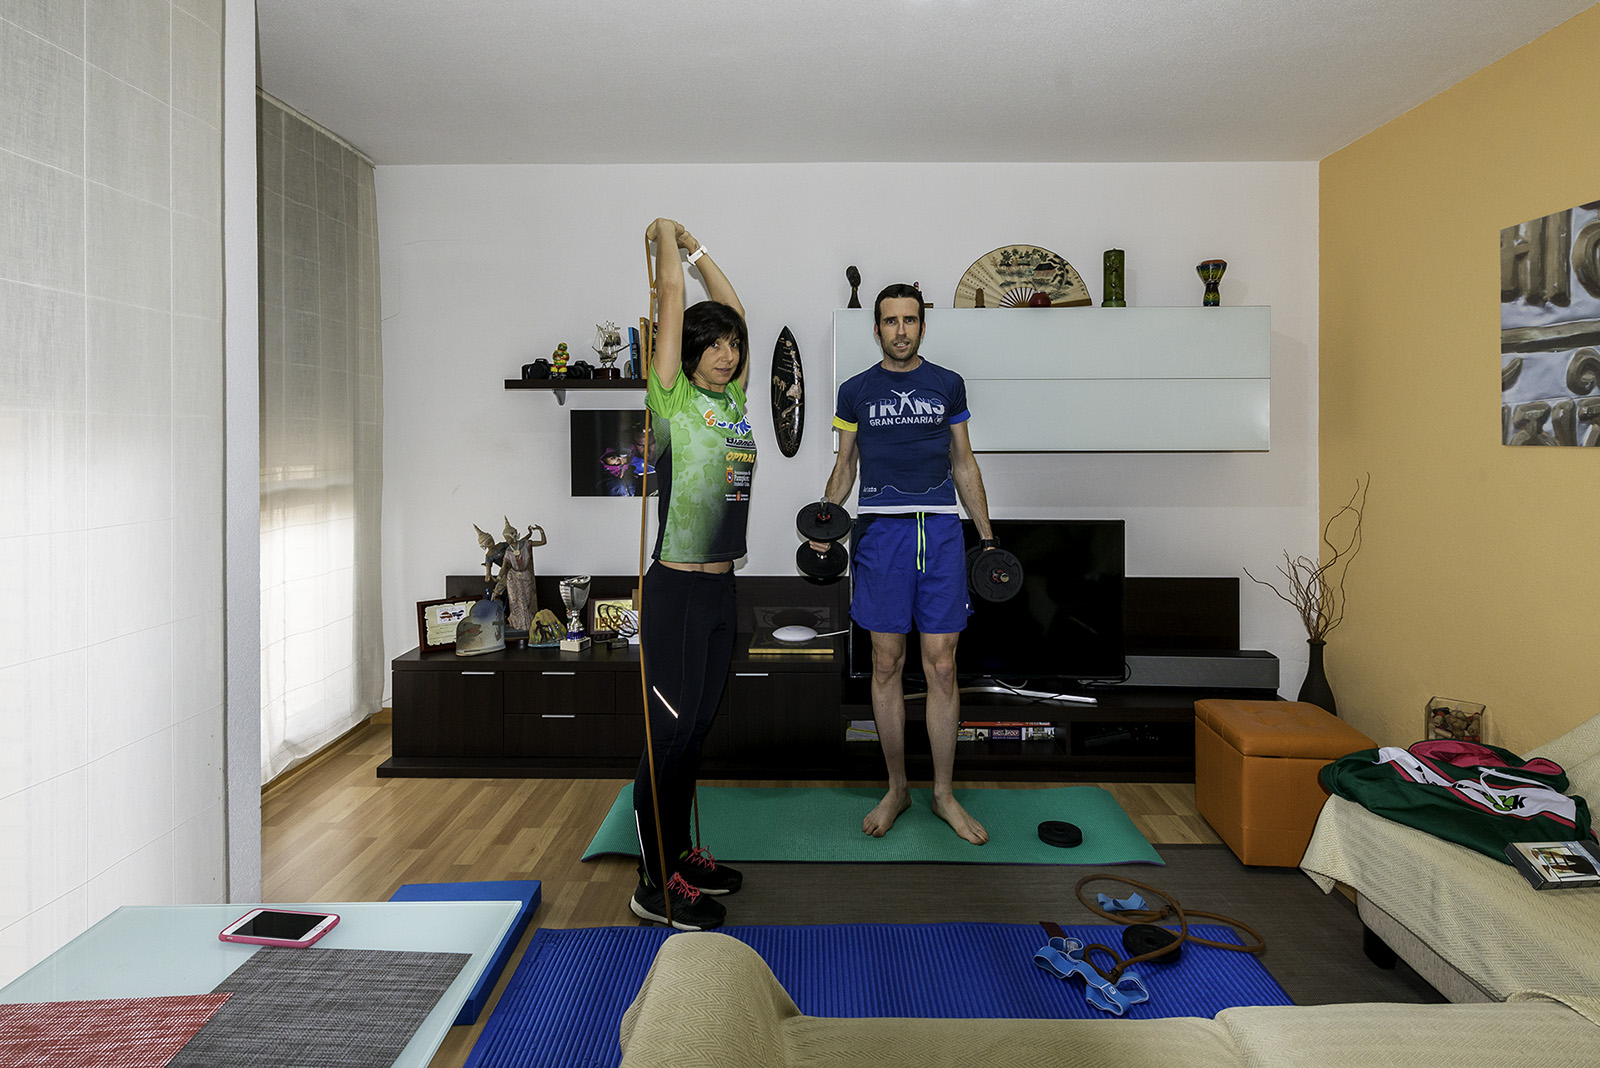 Ana Revilla y Rubén Gimeno en el salón de su casa que muta en gimnasio. Foto: Cedida